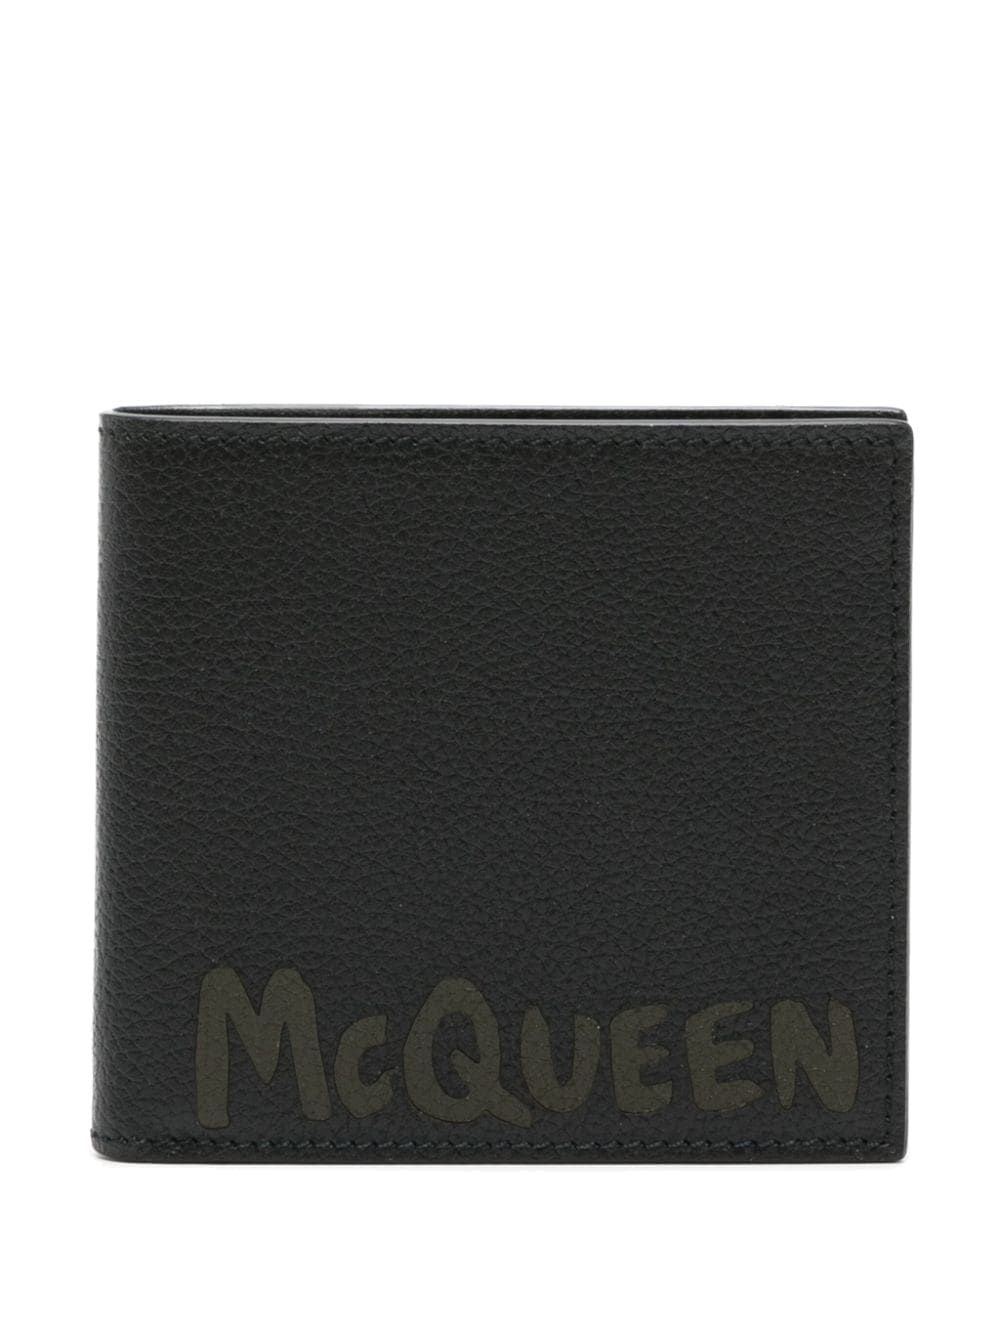 Alexander McQueen Wallet Black/khaki